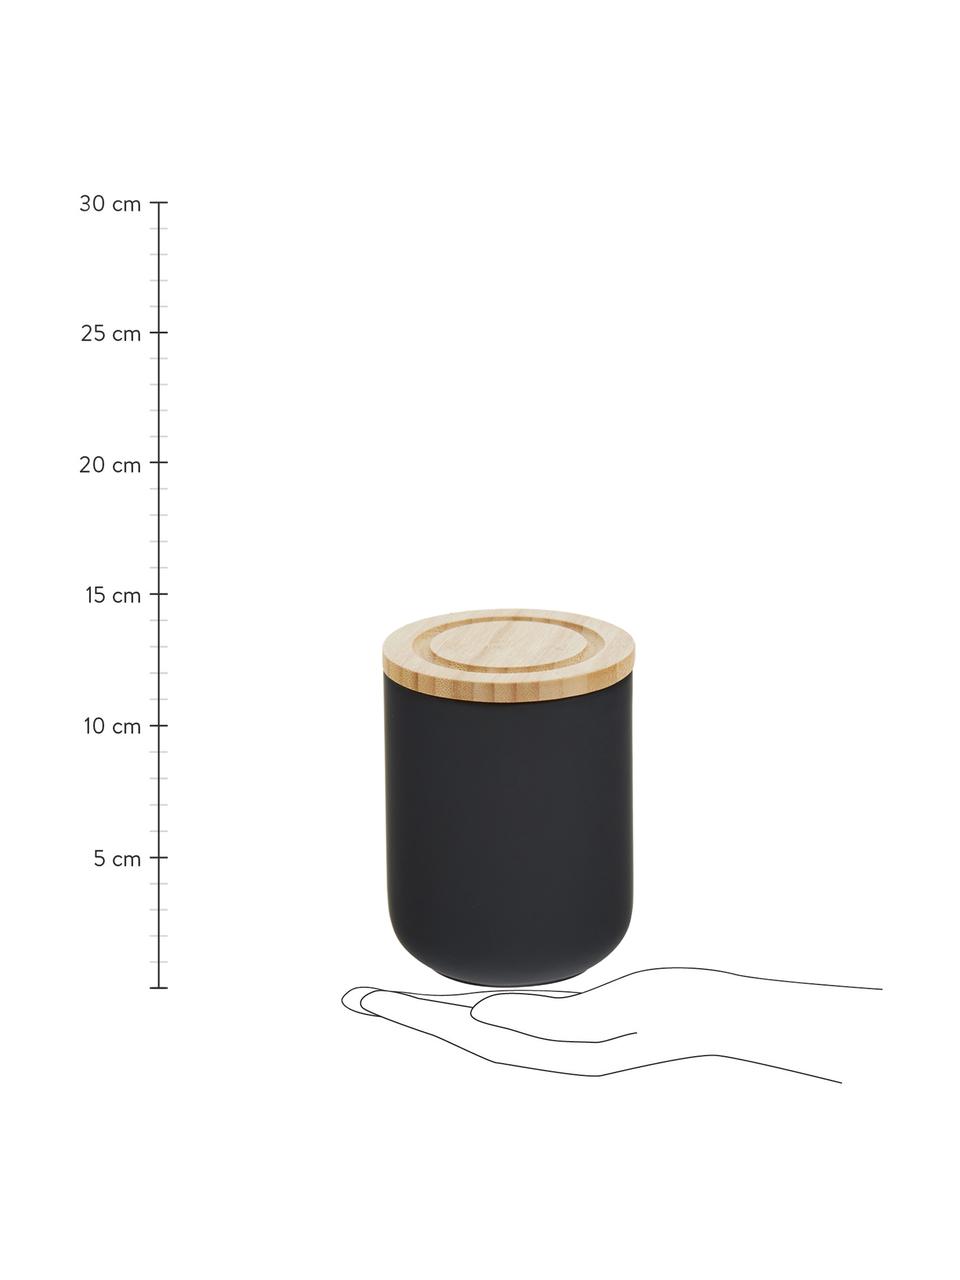 Aufbewahrungsdose Stak, verschiedene Grössen, Dose: Keramik, Deckel: Bambusholz, Schwarz, Bambus, Ø 10 x H 13 cm, 750 ml